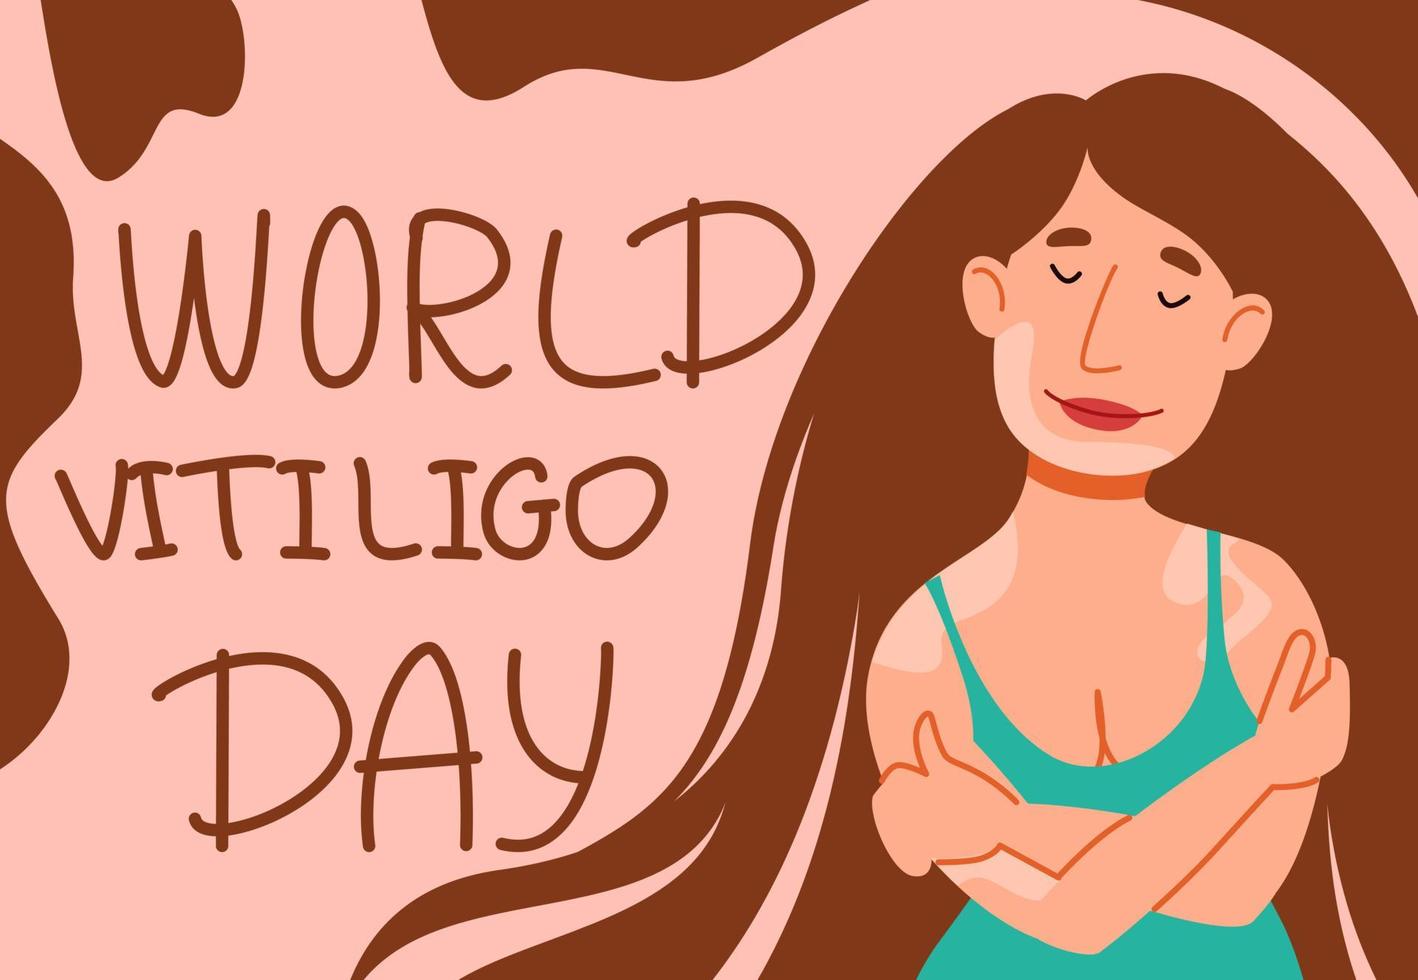 belle fille aux cheveux longs en maillot de bain et au vitiligo. carte postale pour la journée mondiale du vitiligo. vecteur